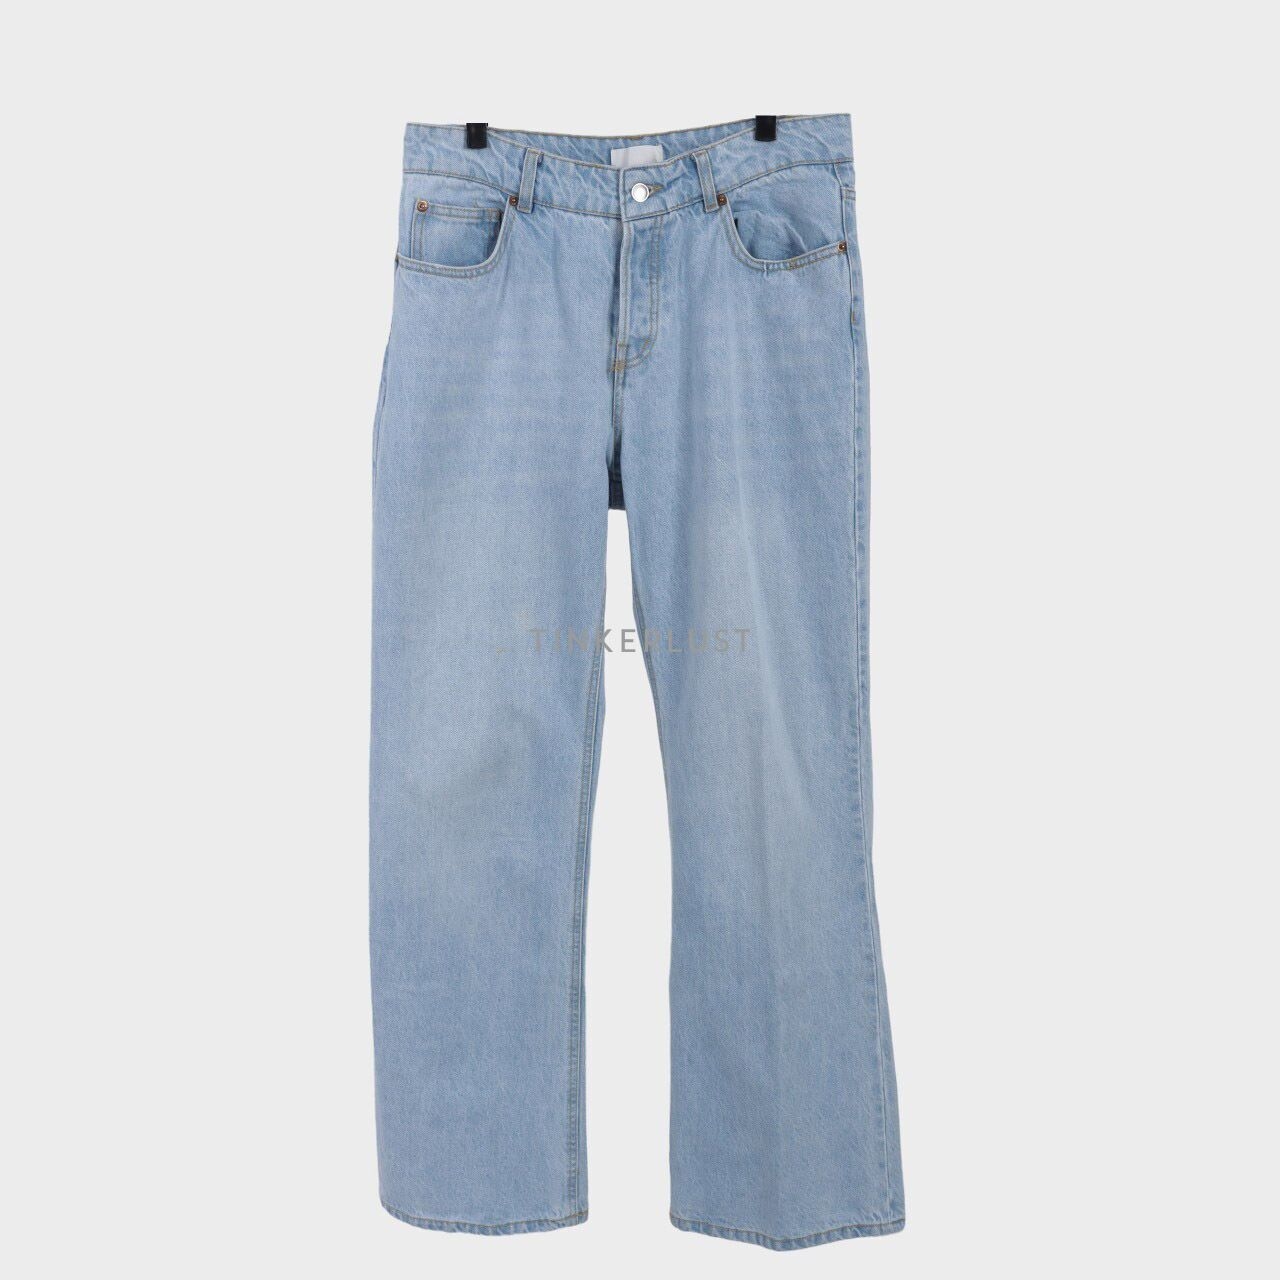 H&M Blue Jeans Long Pants